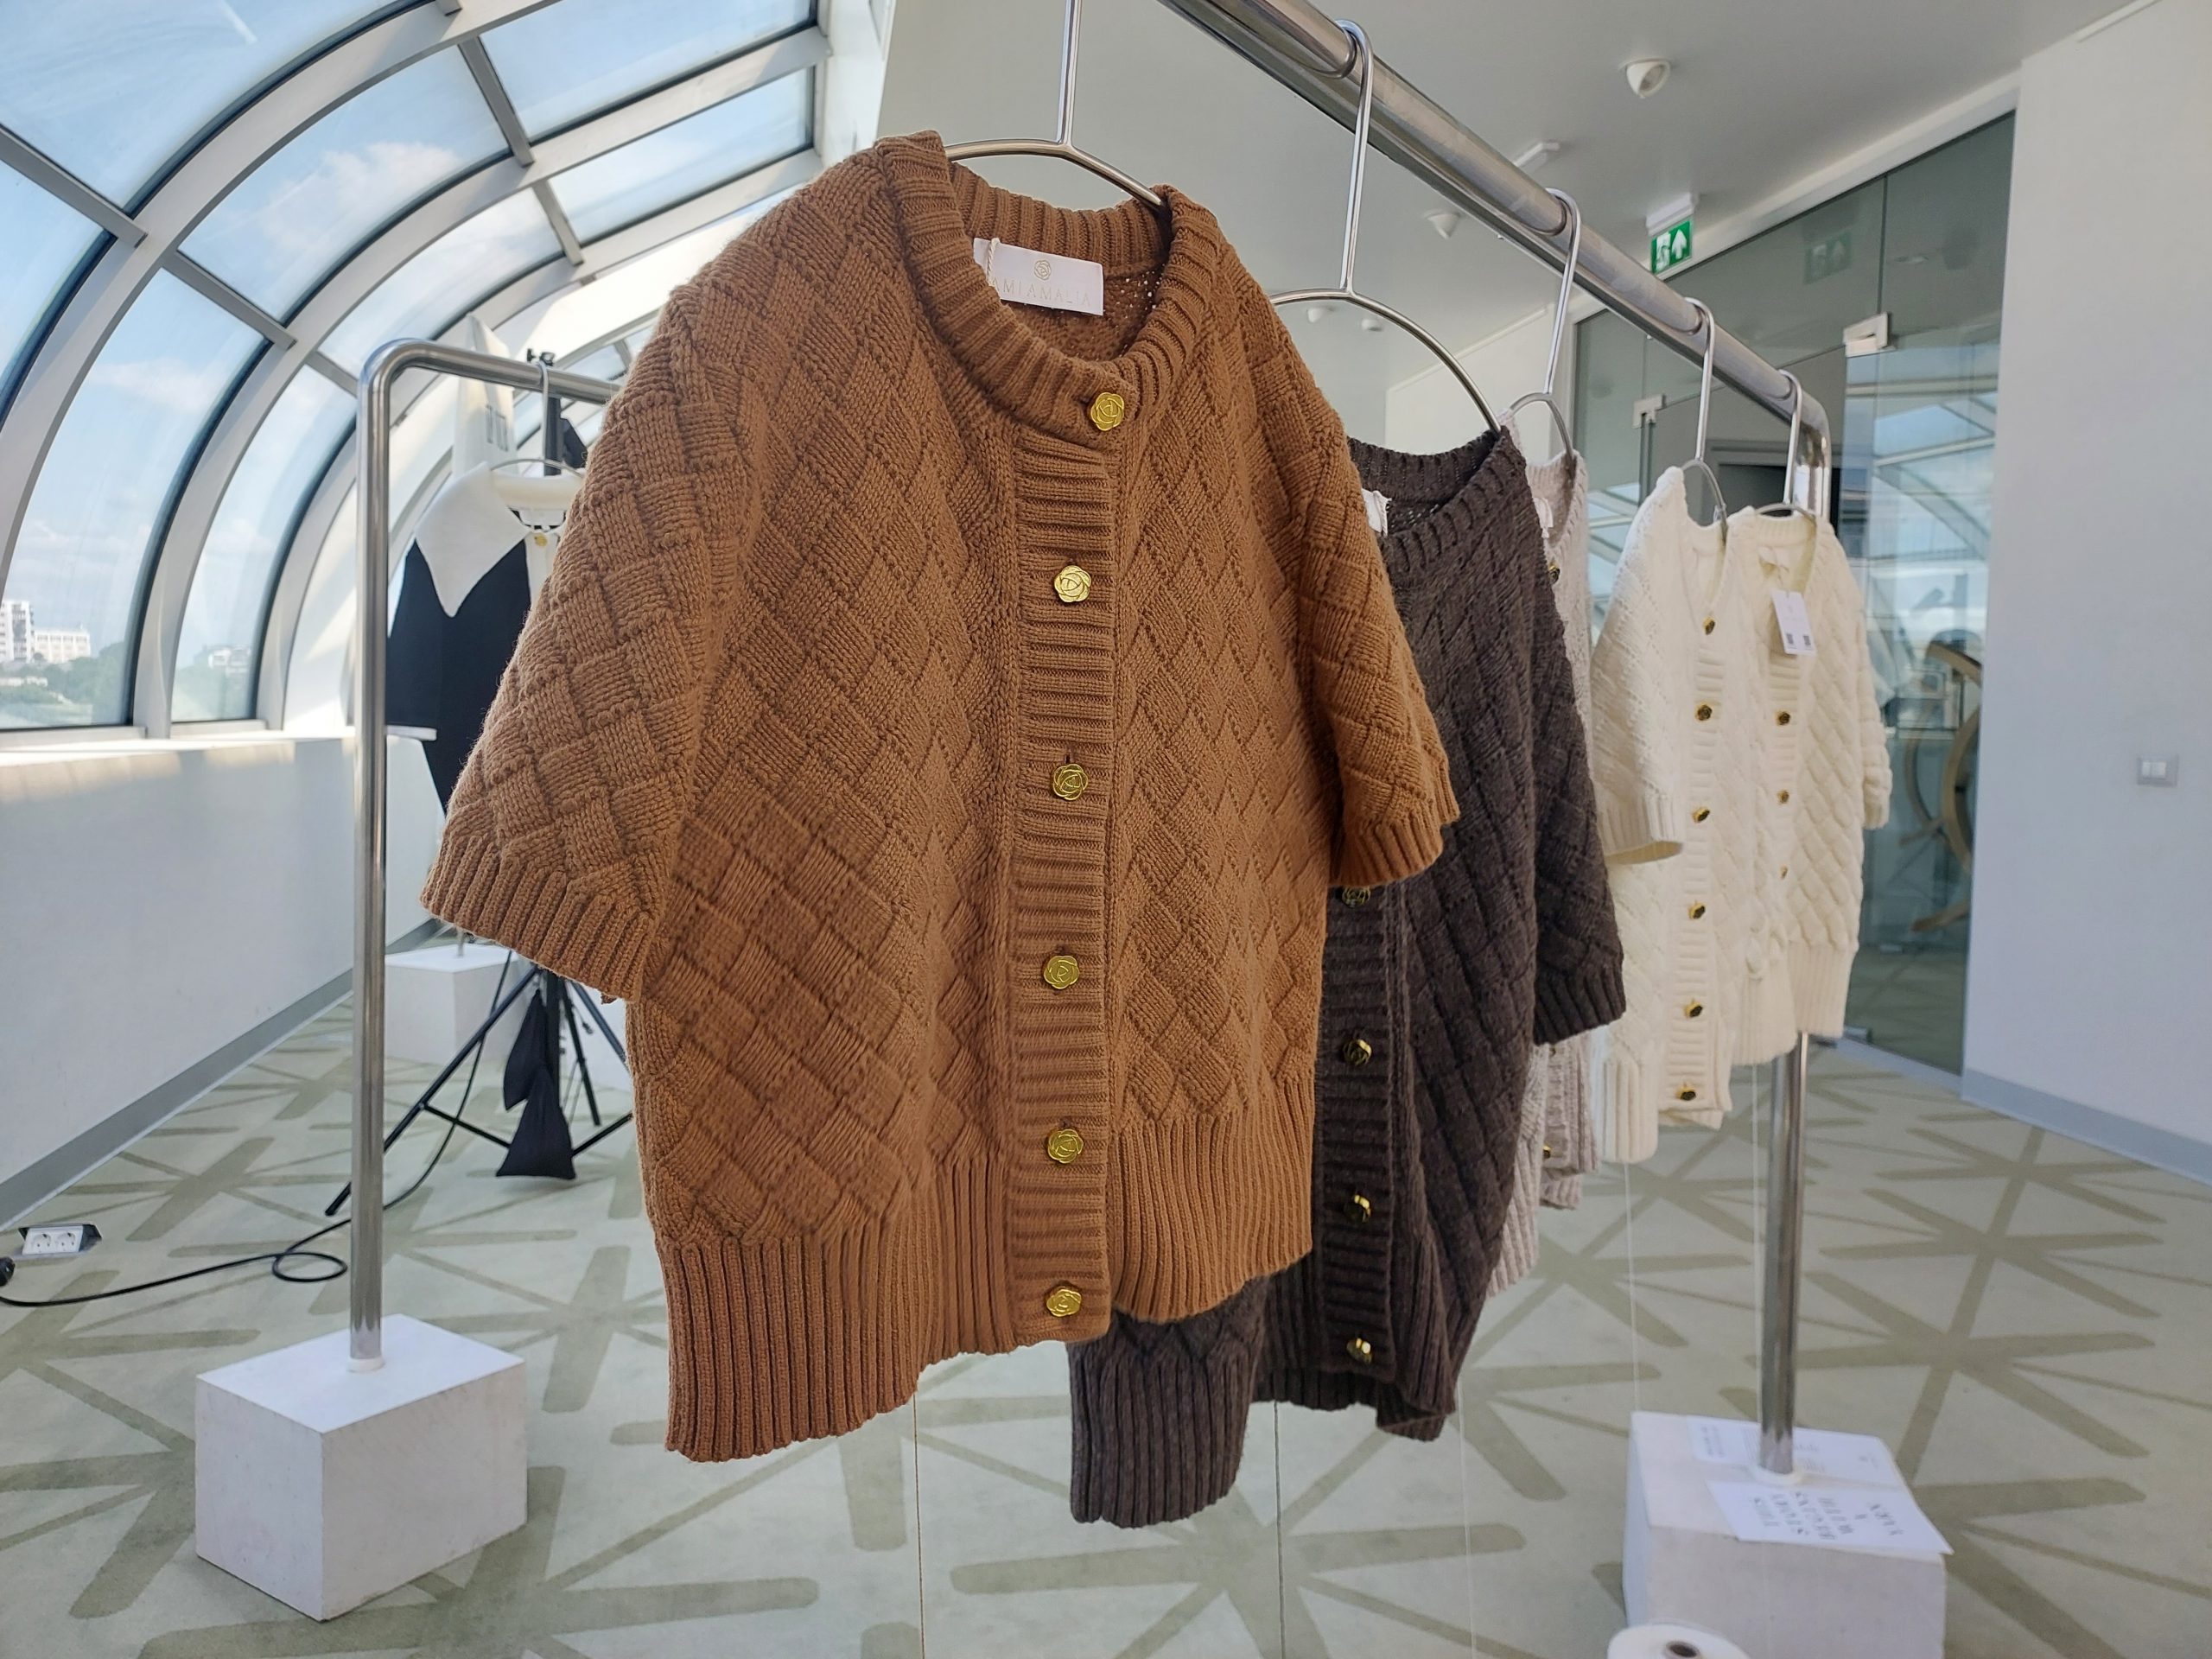 Povestea jachetei confecționată din cel mai scump fir textil din lume, expusă la Romanian Creative Week. Valoarea hainei este de 8.000 de euro